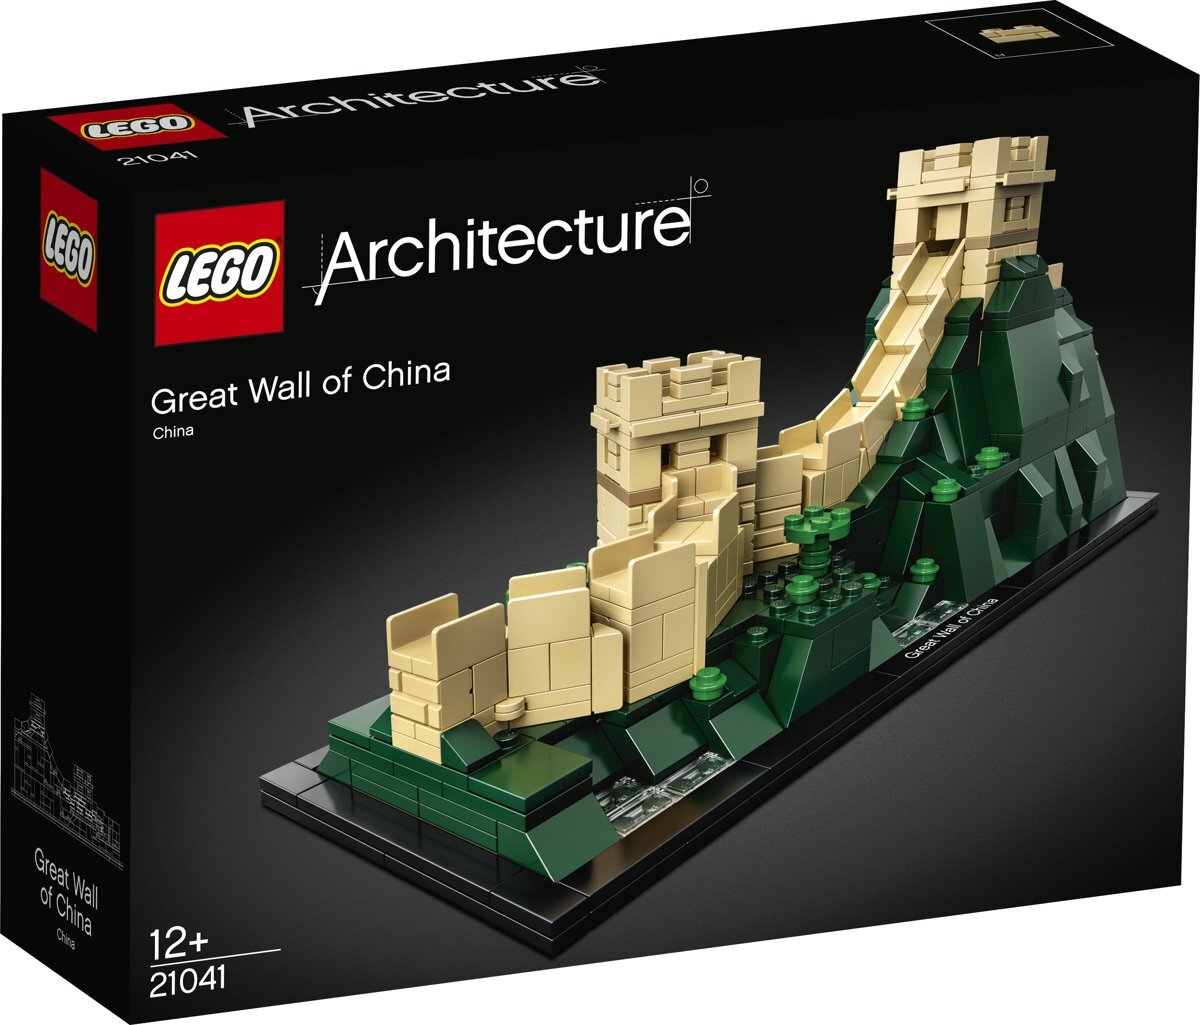 lego Architecture De Chinese Muur - 21041 Verken de Chinese Muur met deze set